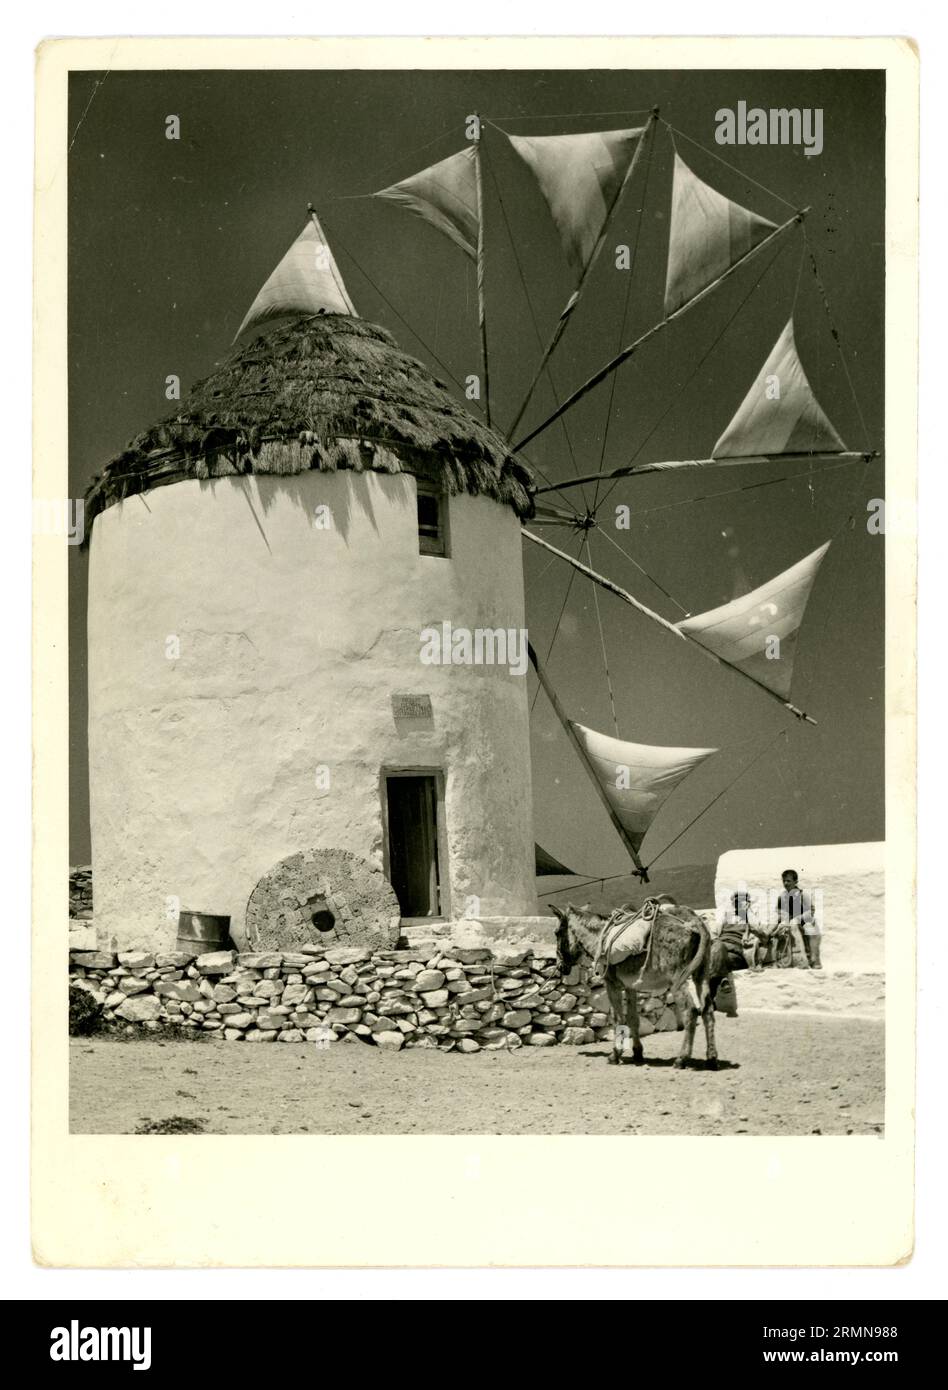 Original-Postkarte aus den späten 1950er Jahren, 1960er Jahre, als Andenken an eine Windmühle mit funktionierenden Segeln, die zum Mahlen von Weizen verwendet wird. Griechische Insel Mykonos, Kykladen, Griechenland, dieses Bild zeigt die letzten Arbeitsjahre dieser Windmühle. Die Windmühlen sind Wahrzeichen von Mykonos. Stockfoto